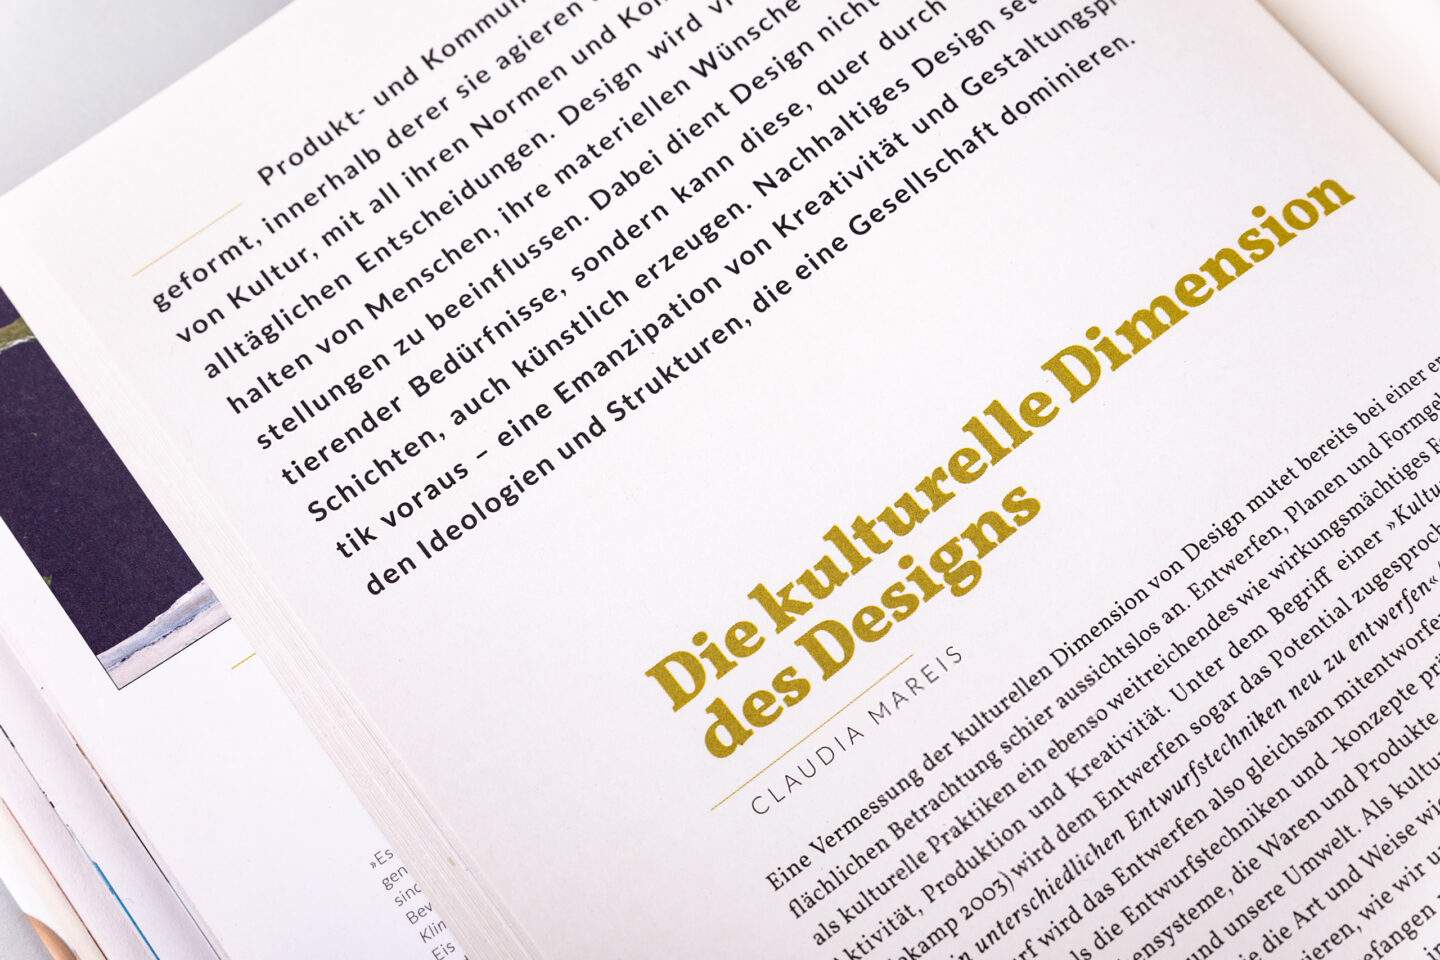 Büro Gestalten: Die Geschichte de nachhaltigen Designs (Buch, Detail Texteinstieg)